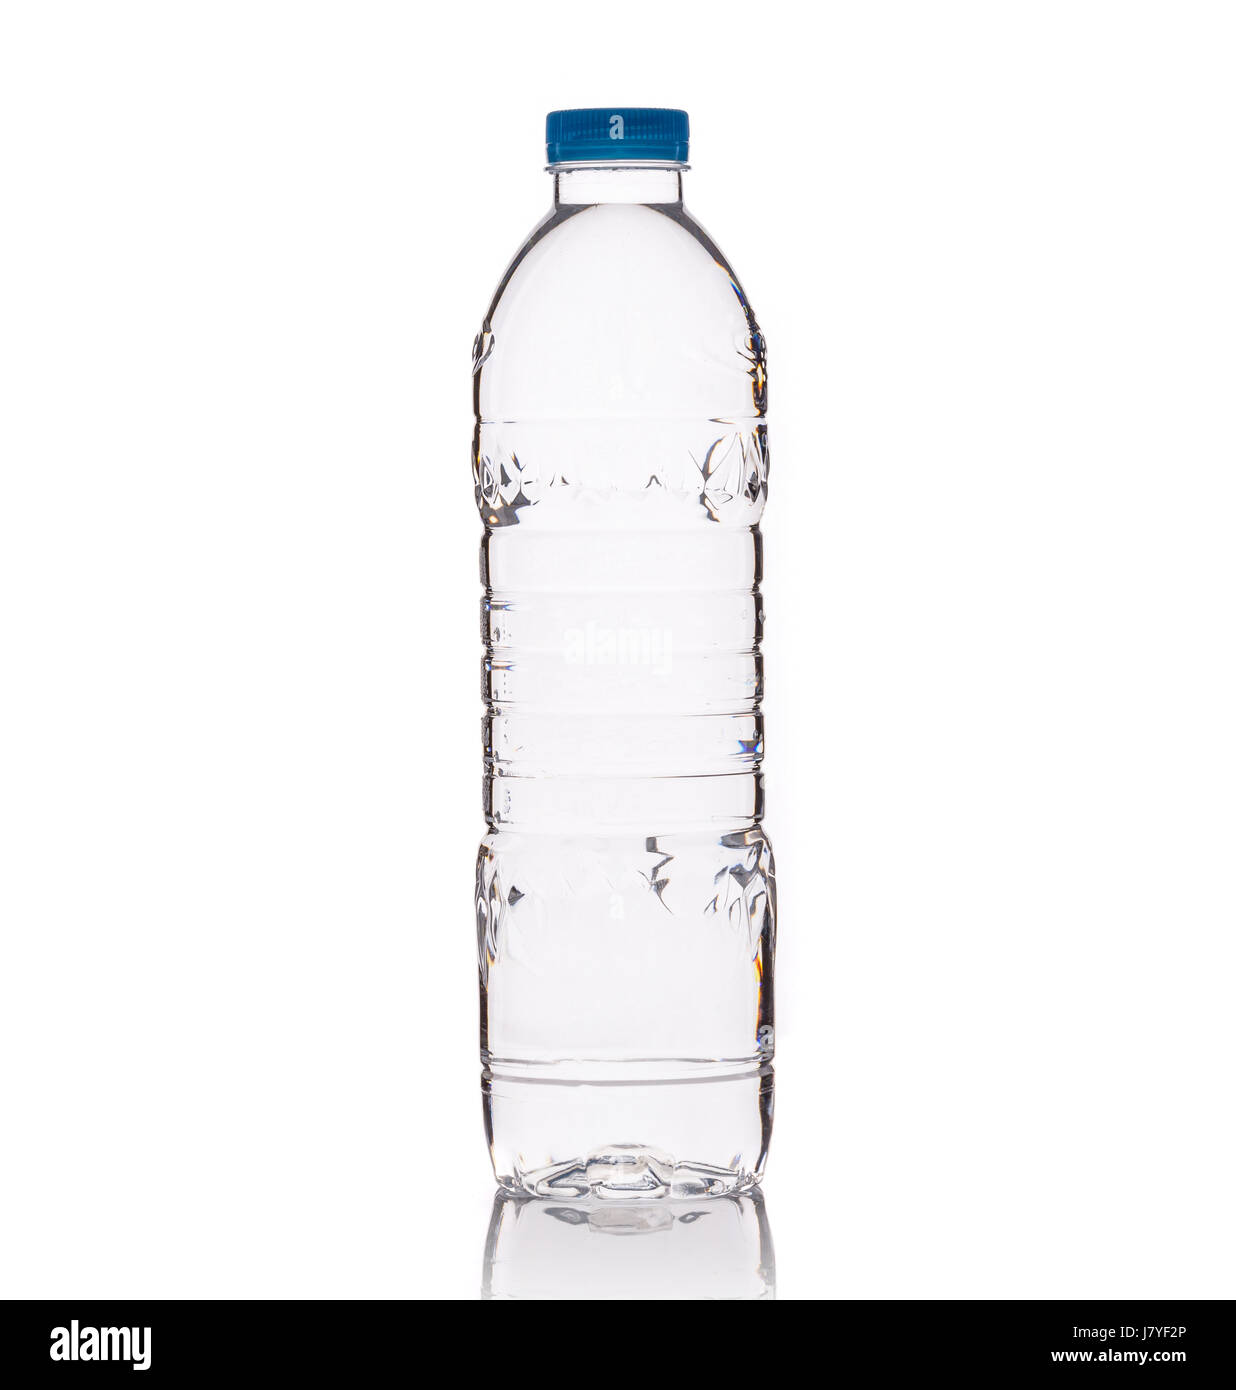 https://c8.alamy.com/comp/J7YF2P/drinking-water-in-clear-plastic-bottle-studio-shot-isolated-on-white-J7YF2P.jpg